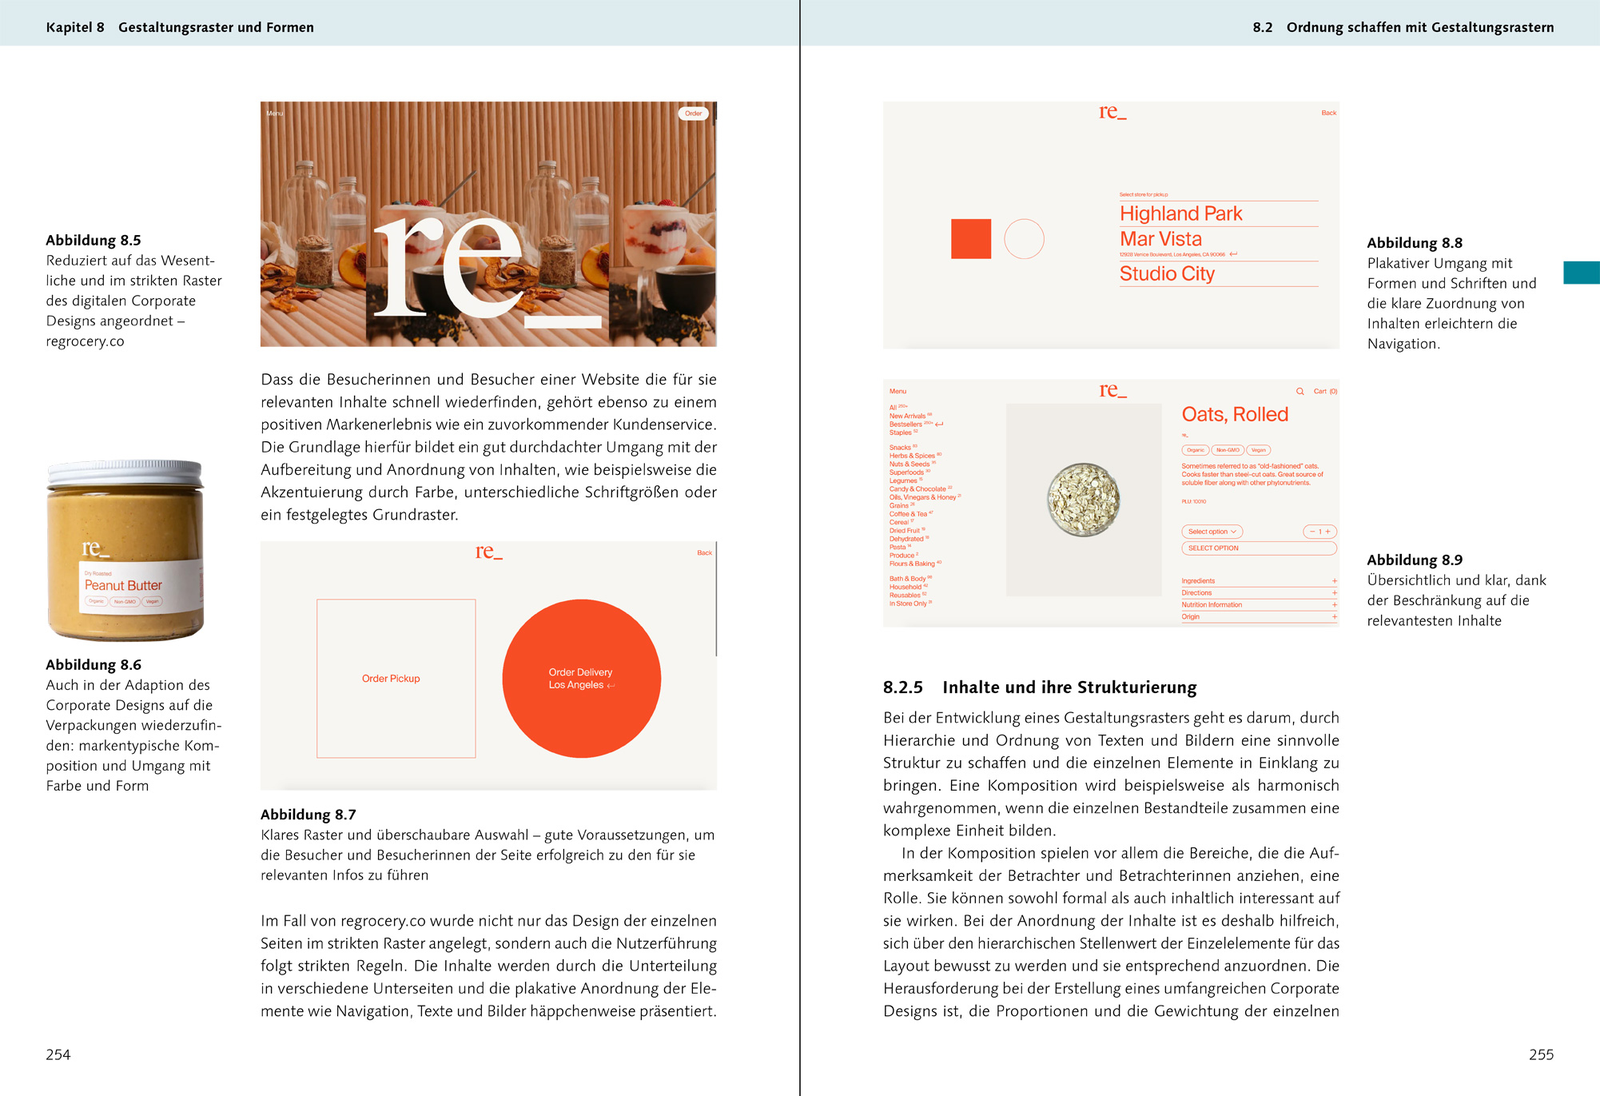 Corporate Design – Das umfassende Handbuch, Quelle: Rheinwerk Verlag